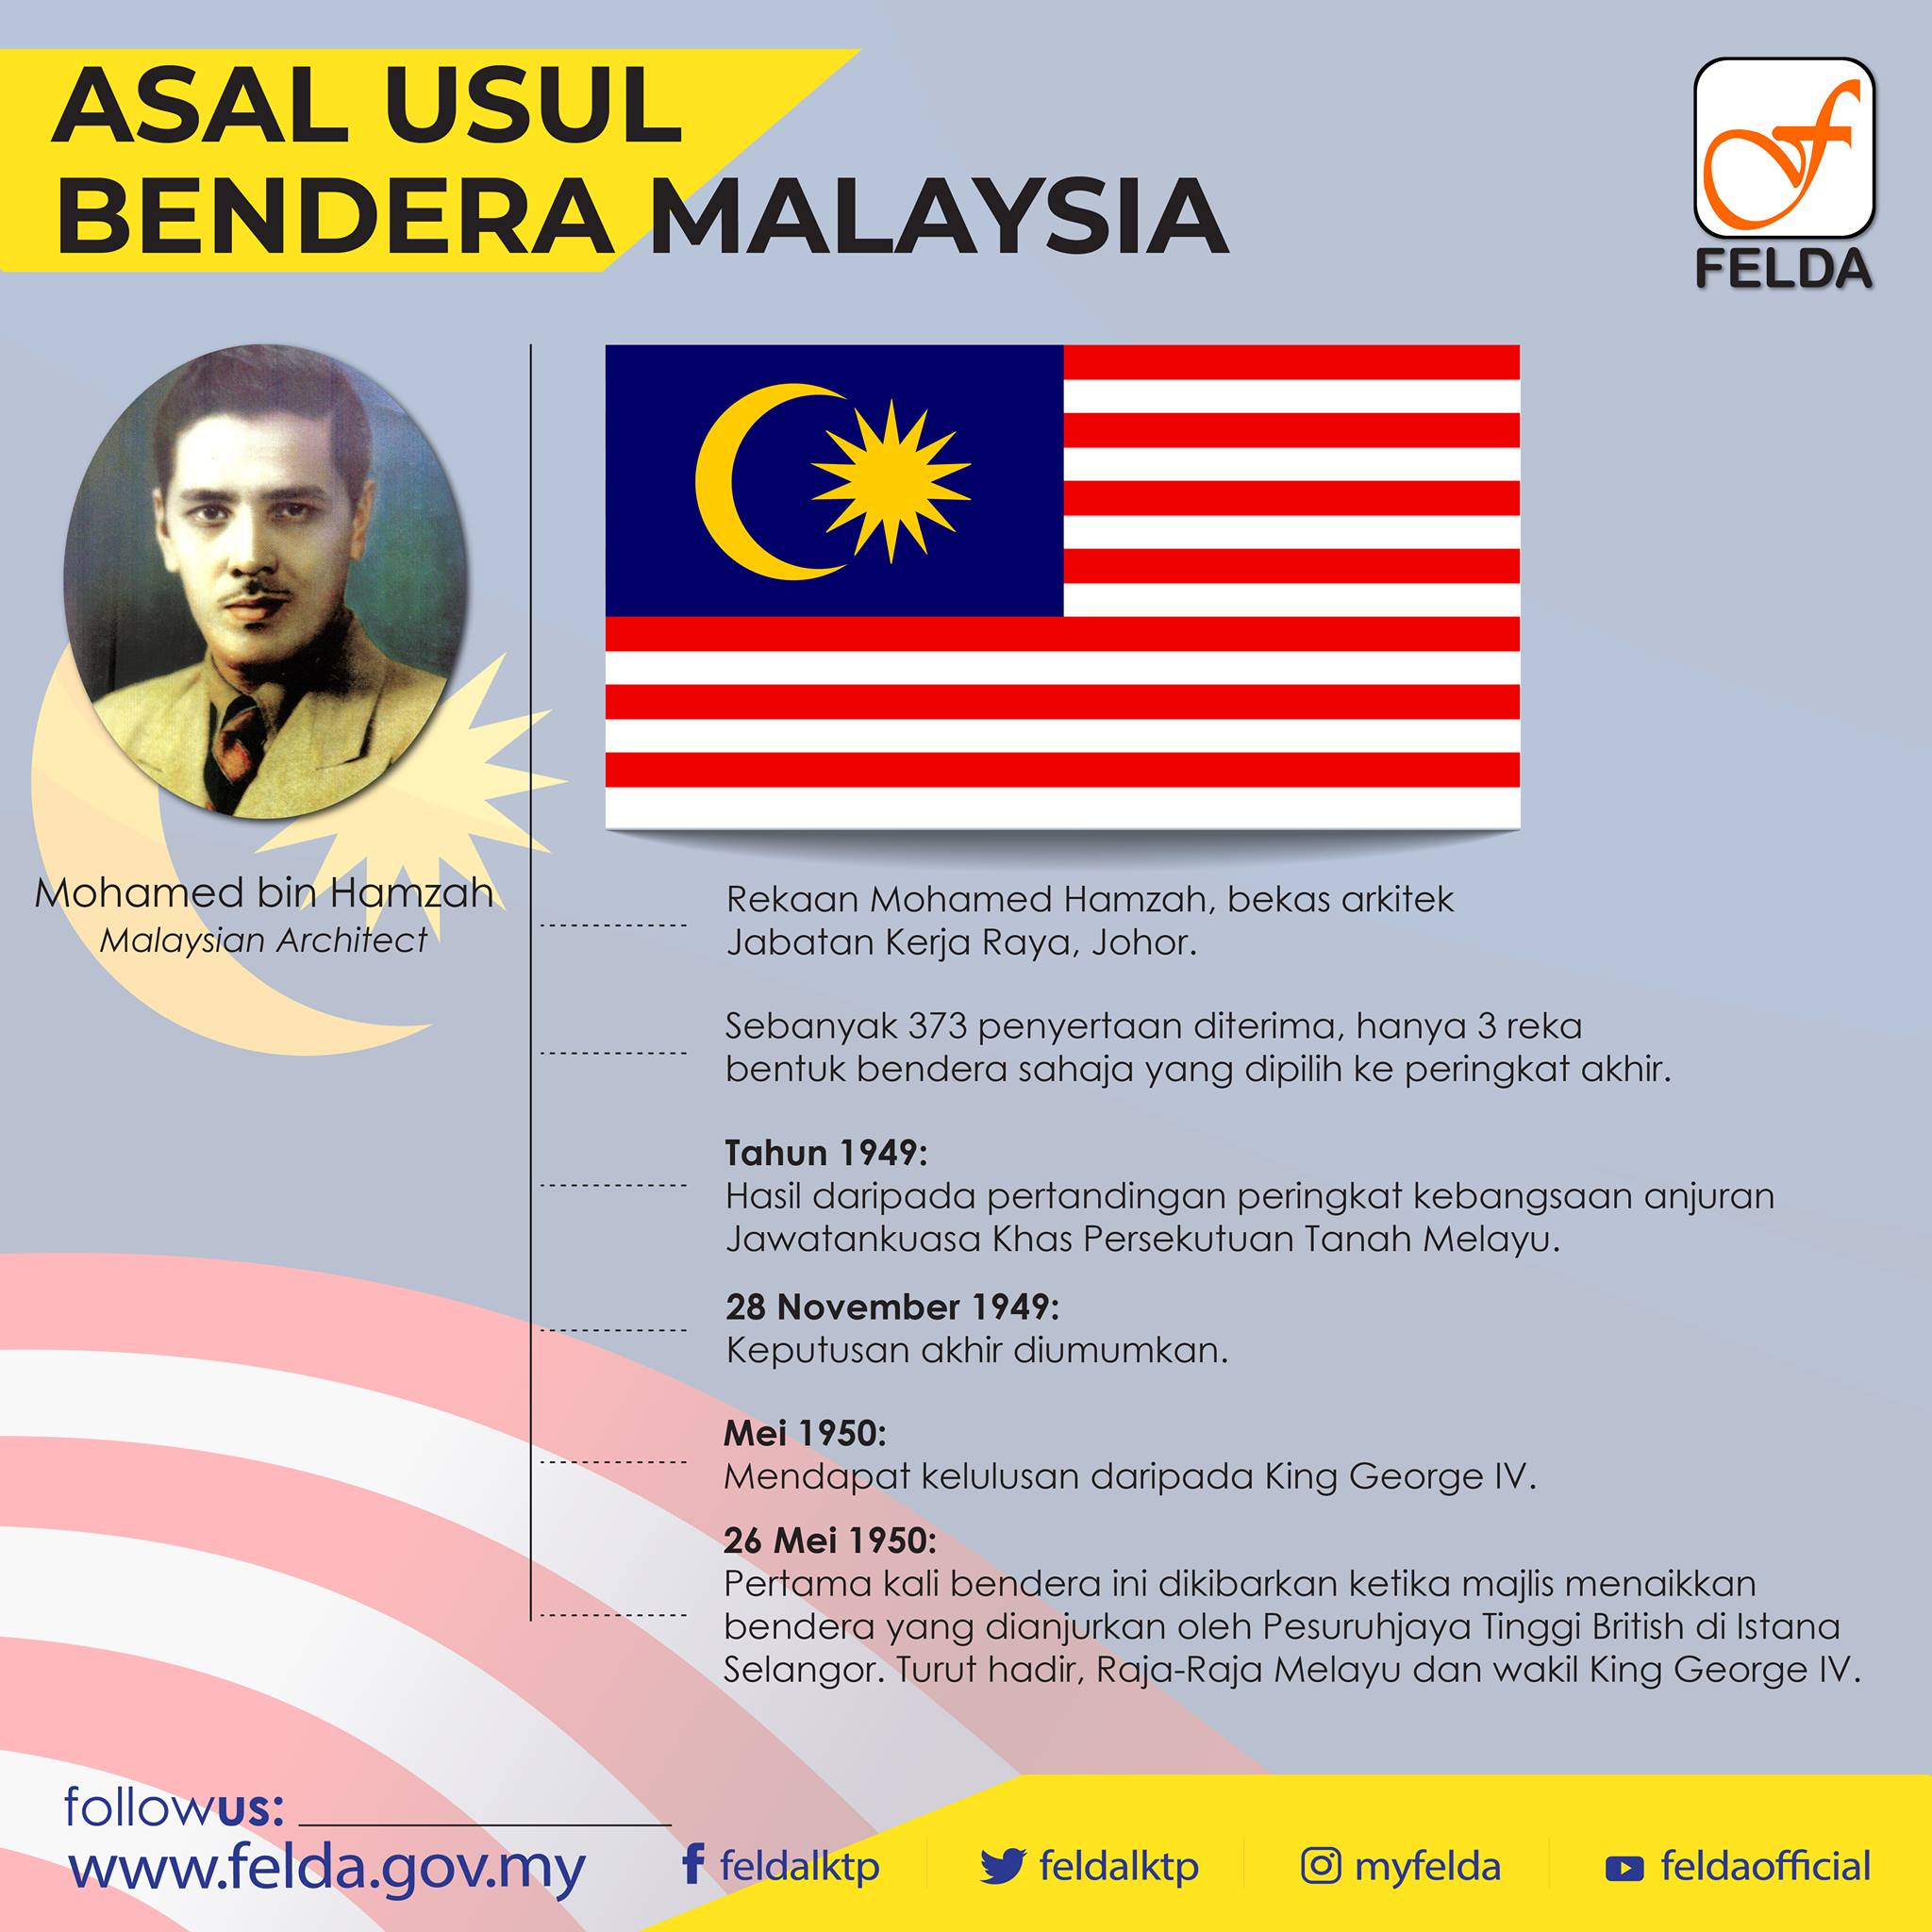 ASAL USUL BENDERA MALAYSIA